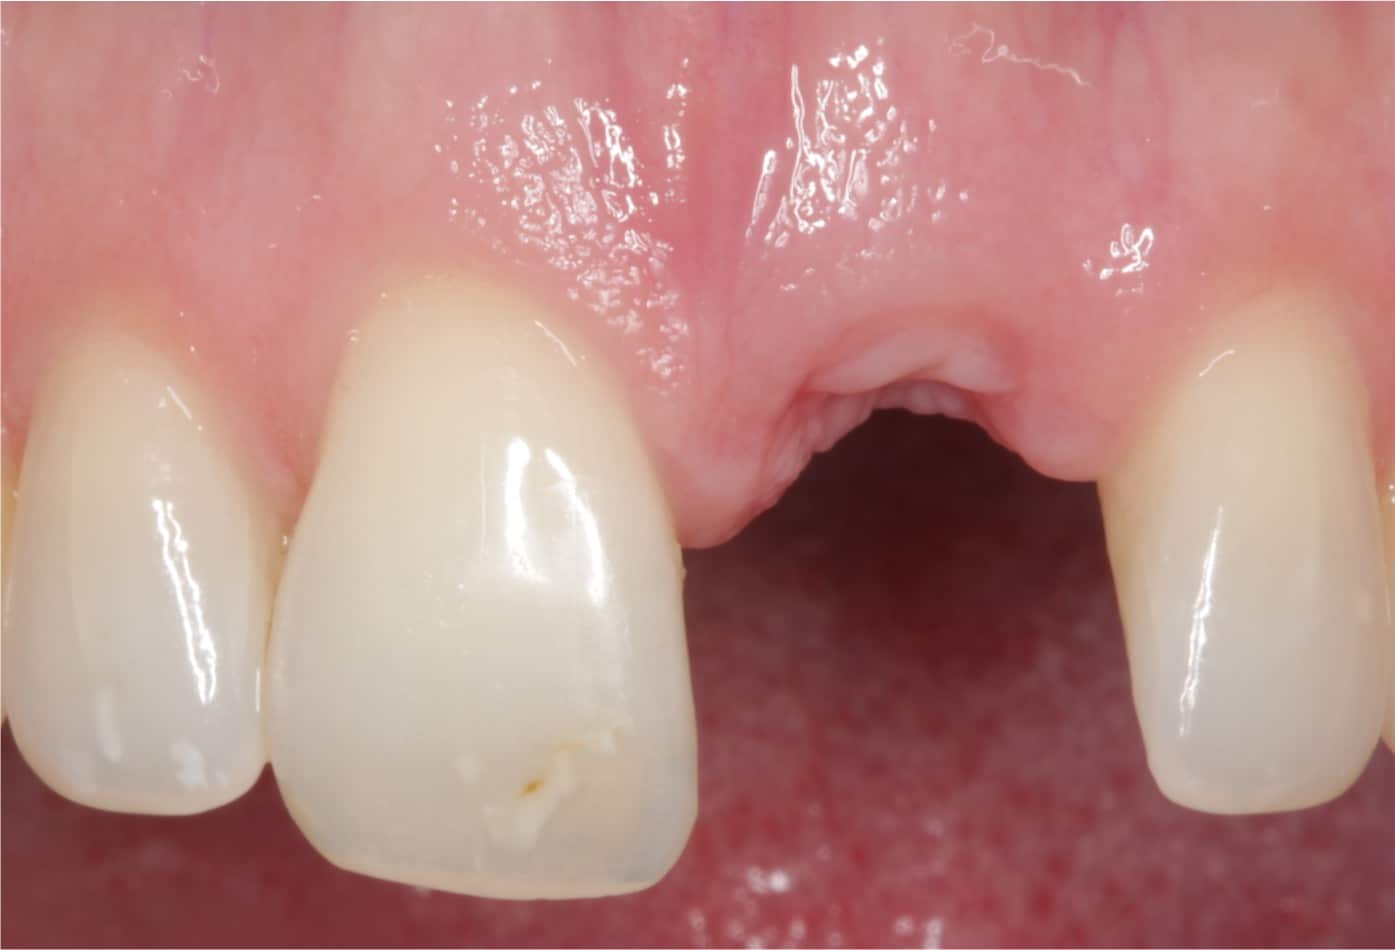 Der Kiefer wird vorbereitet für ein Zahnimplantat, das Bild zeigt eine Zahnlücke